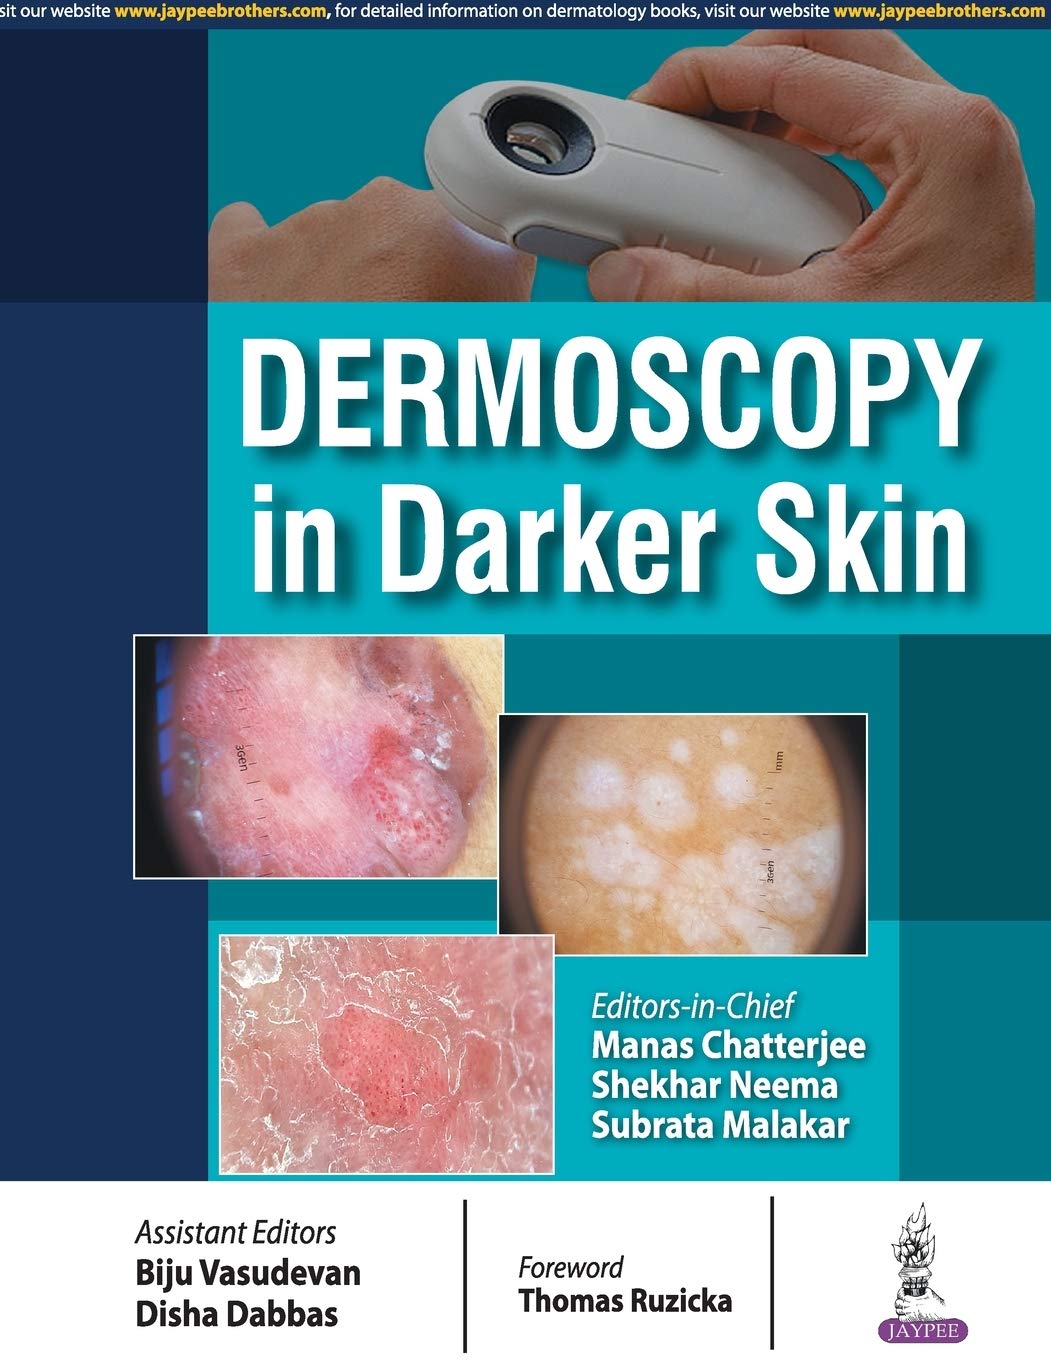 Dermoscopy In Darker Skin